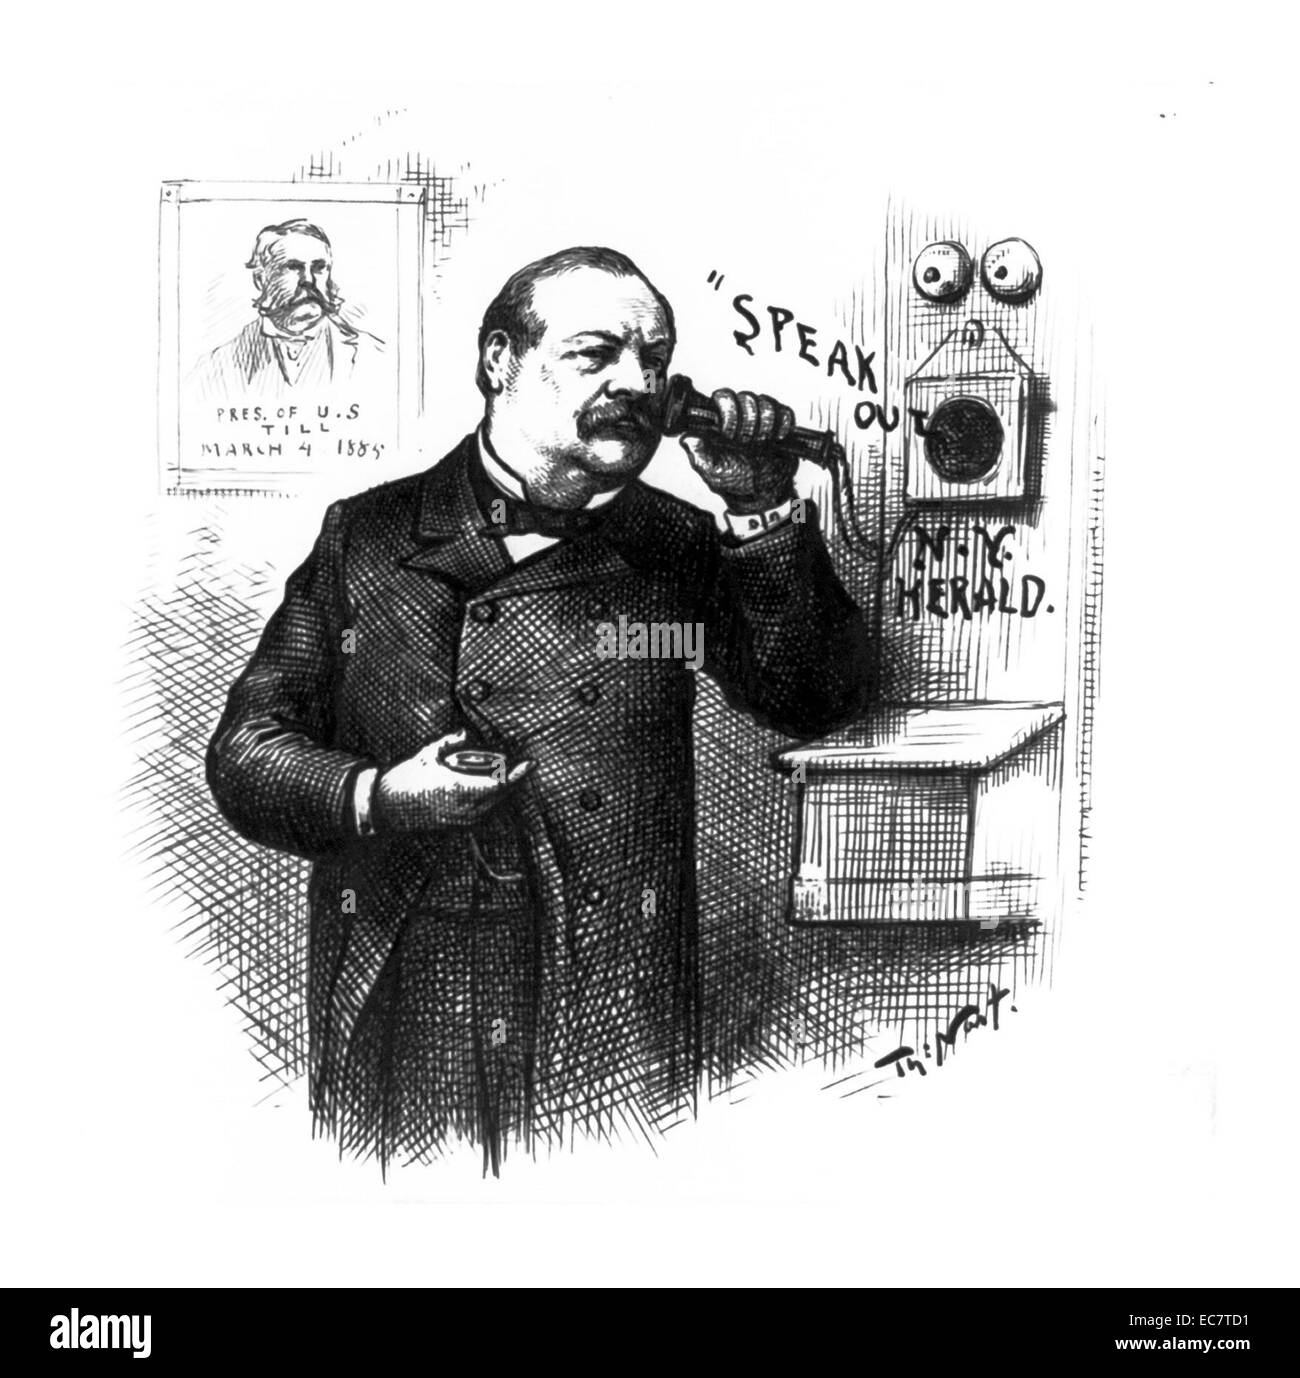 Der designierte Präsident Grover Cleveland hält ein Telefon an seinem Ohr. An der Wand ein Porträt von Präsident Chester A. Arthur mit Untertiteln, "Pres. von USA bis März 4, 1885." Stockfoto